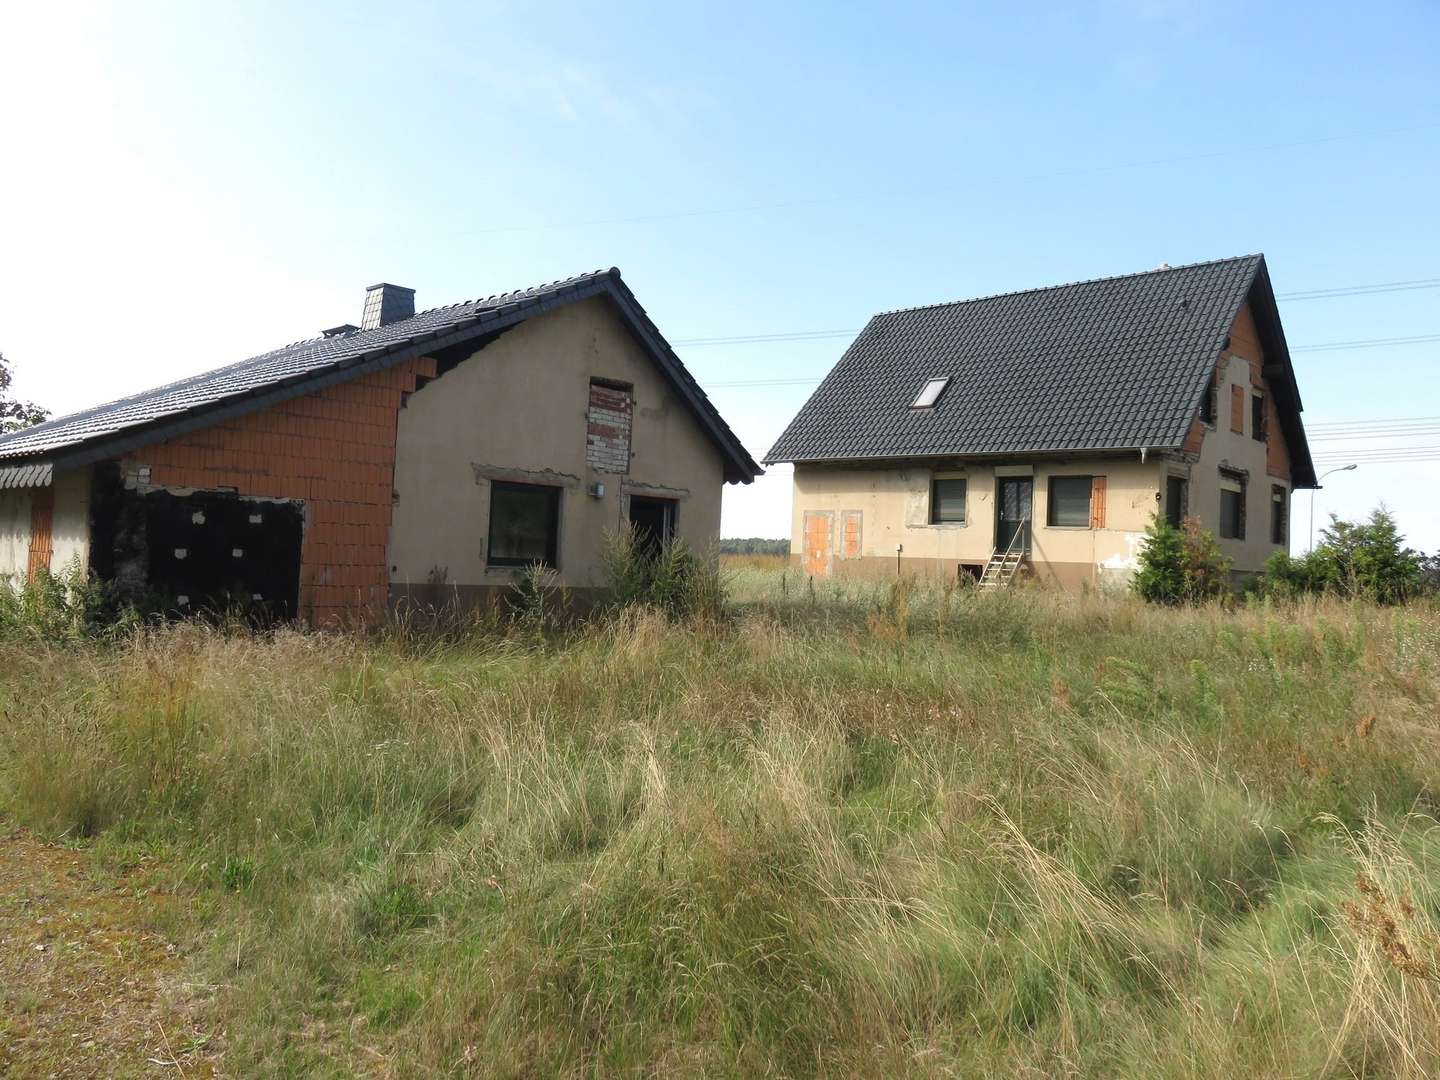 IMG_8355 - Einfamilienhaus in 03116 Drebkau mit 154m² kaufen